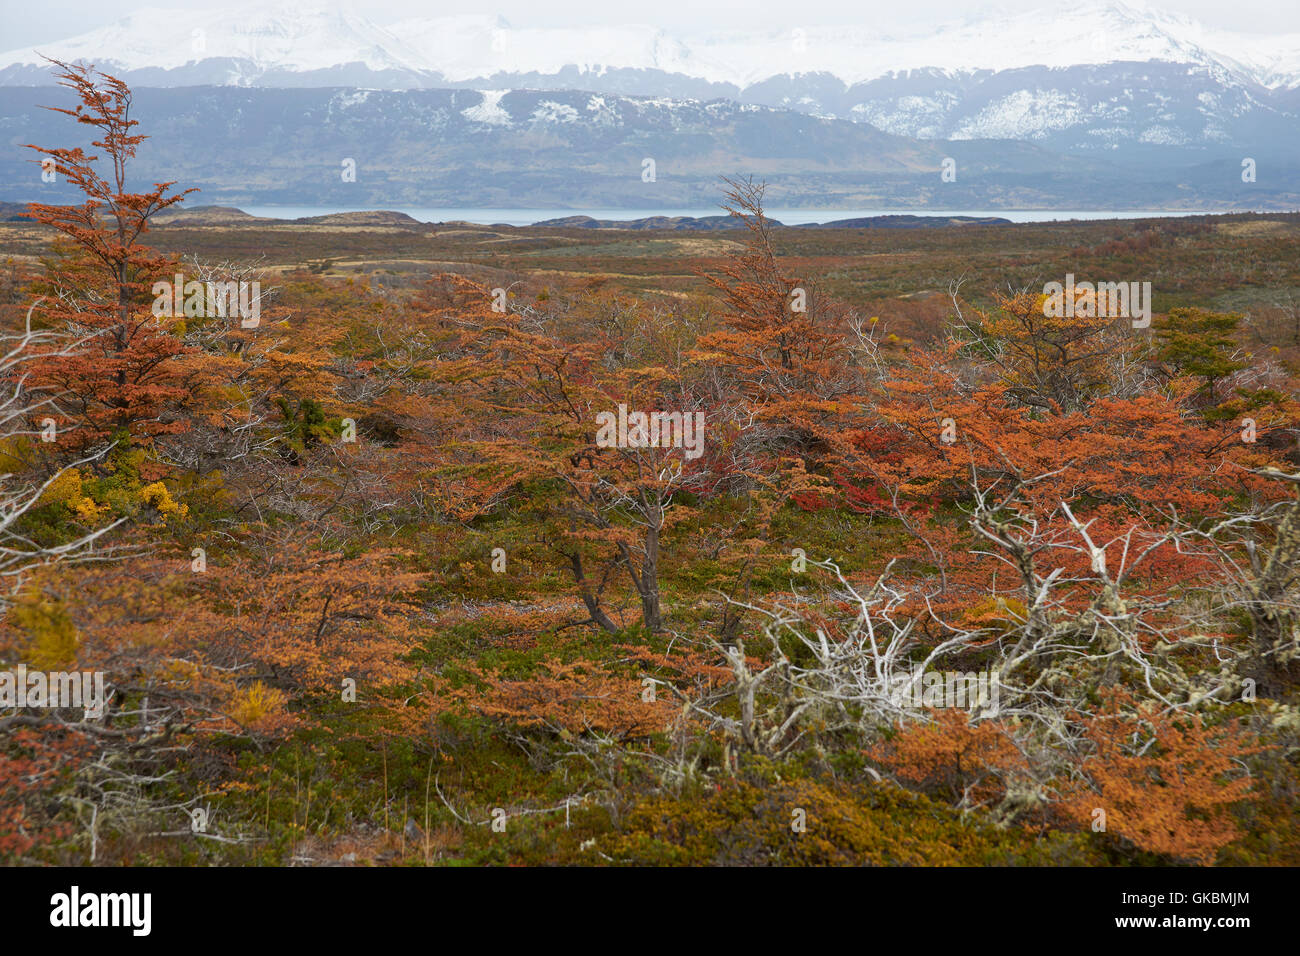 Autumn in Patagonia. Stock Photo